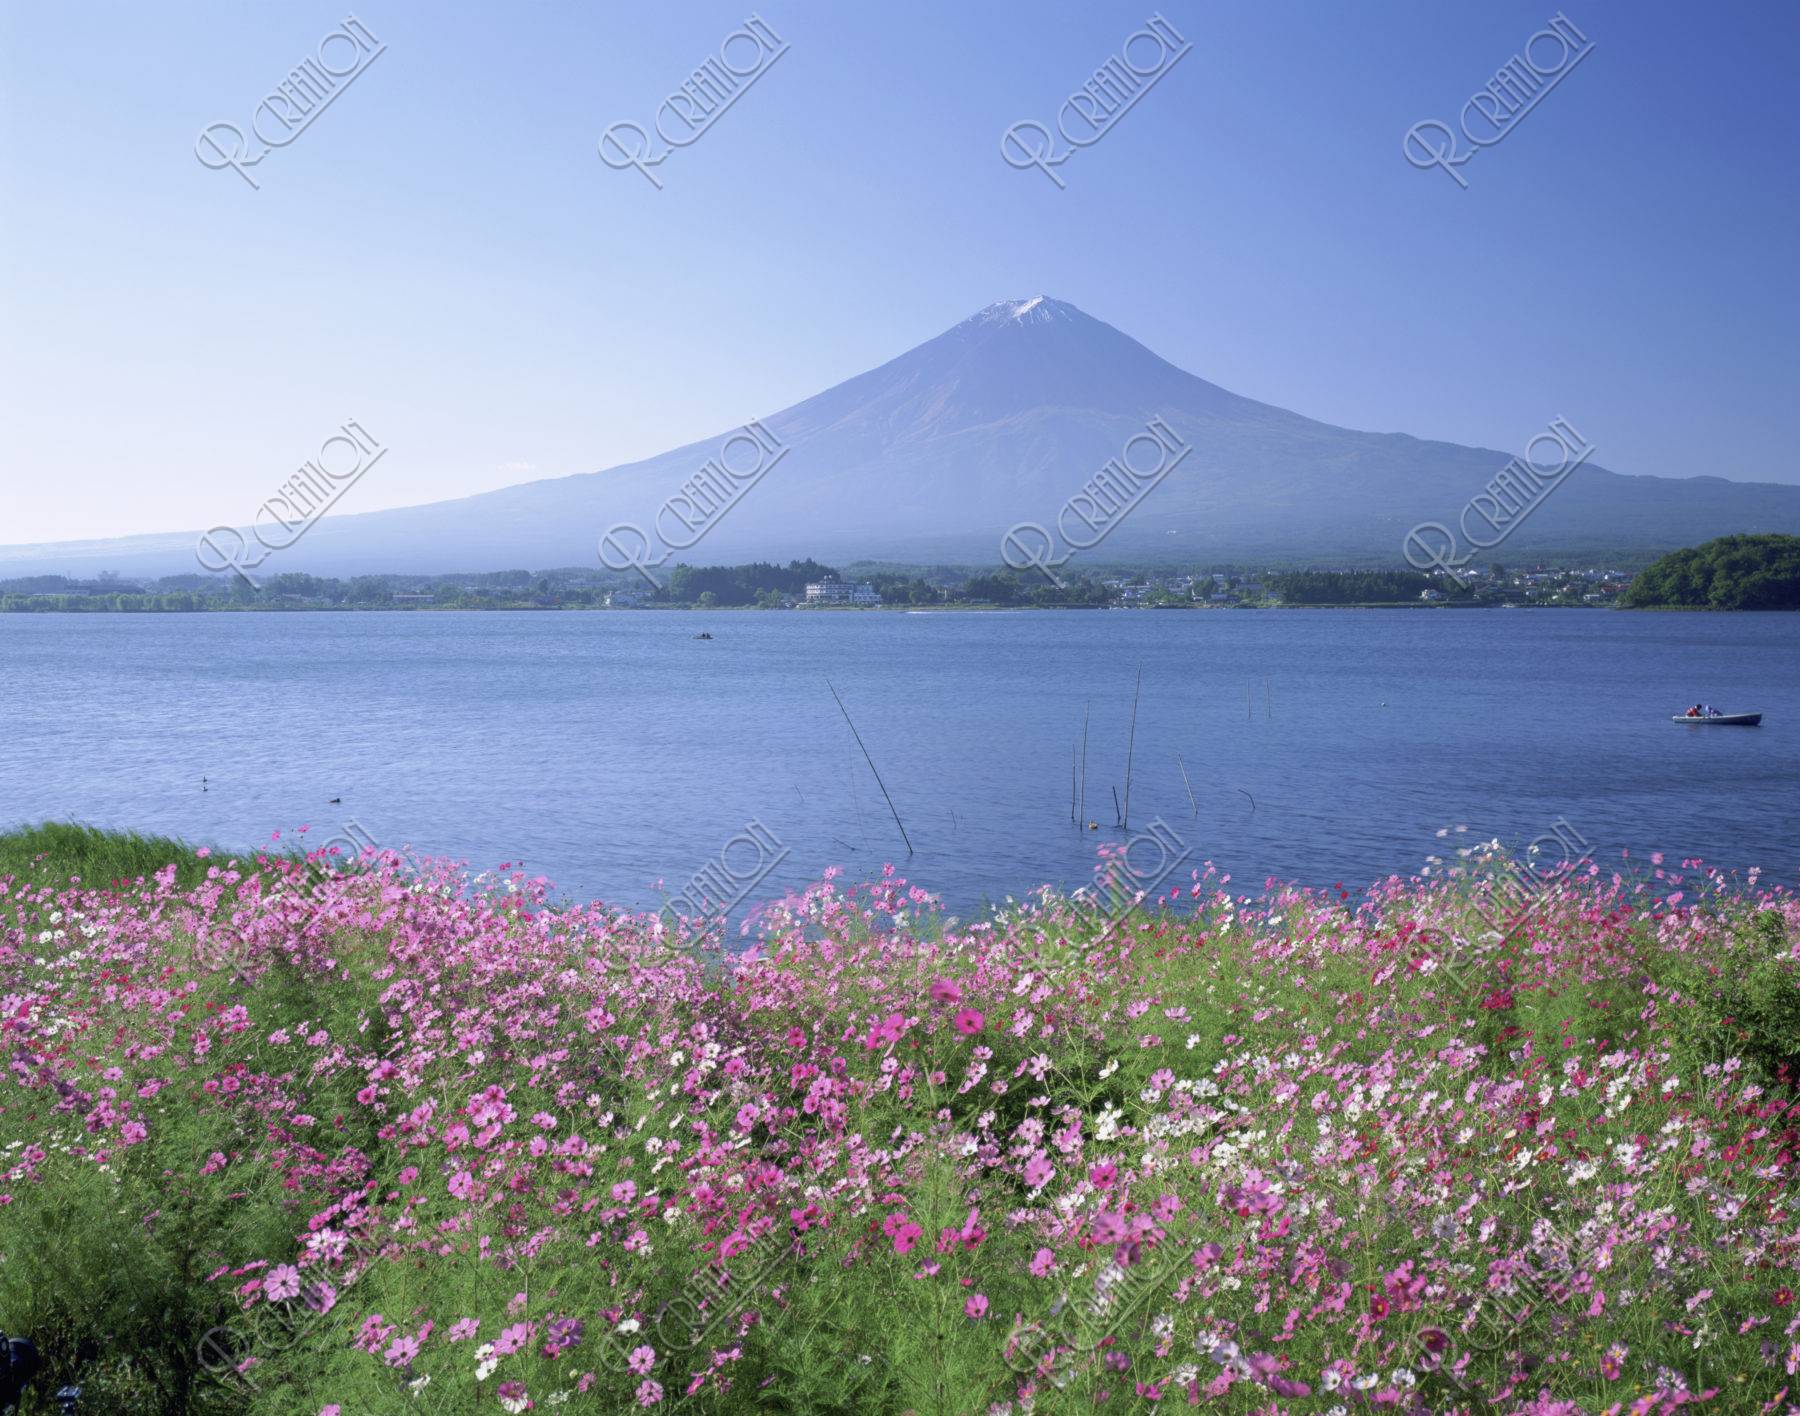 コスモスと富士山